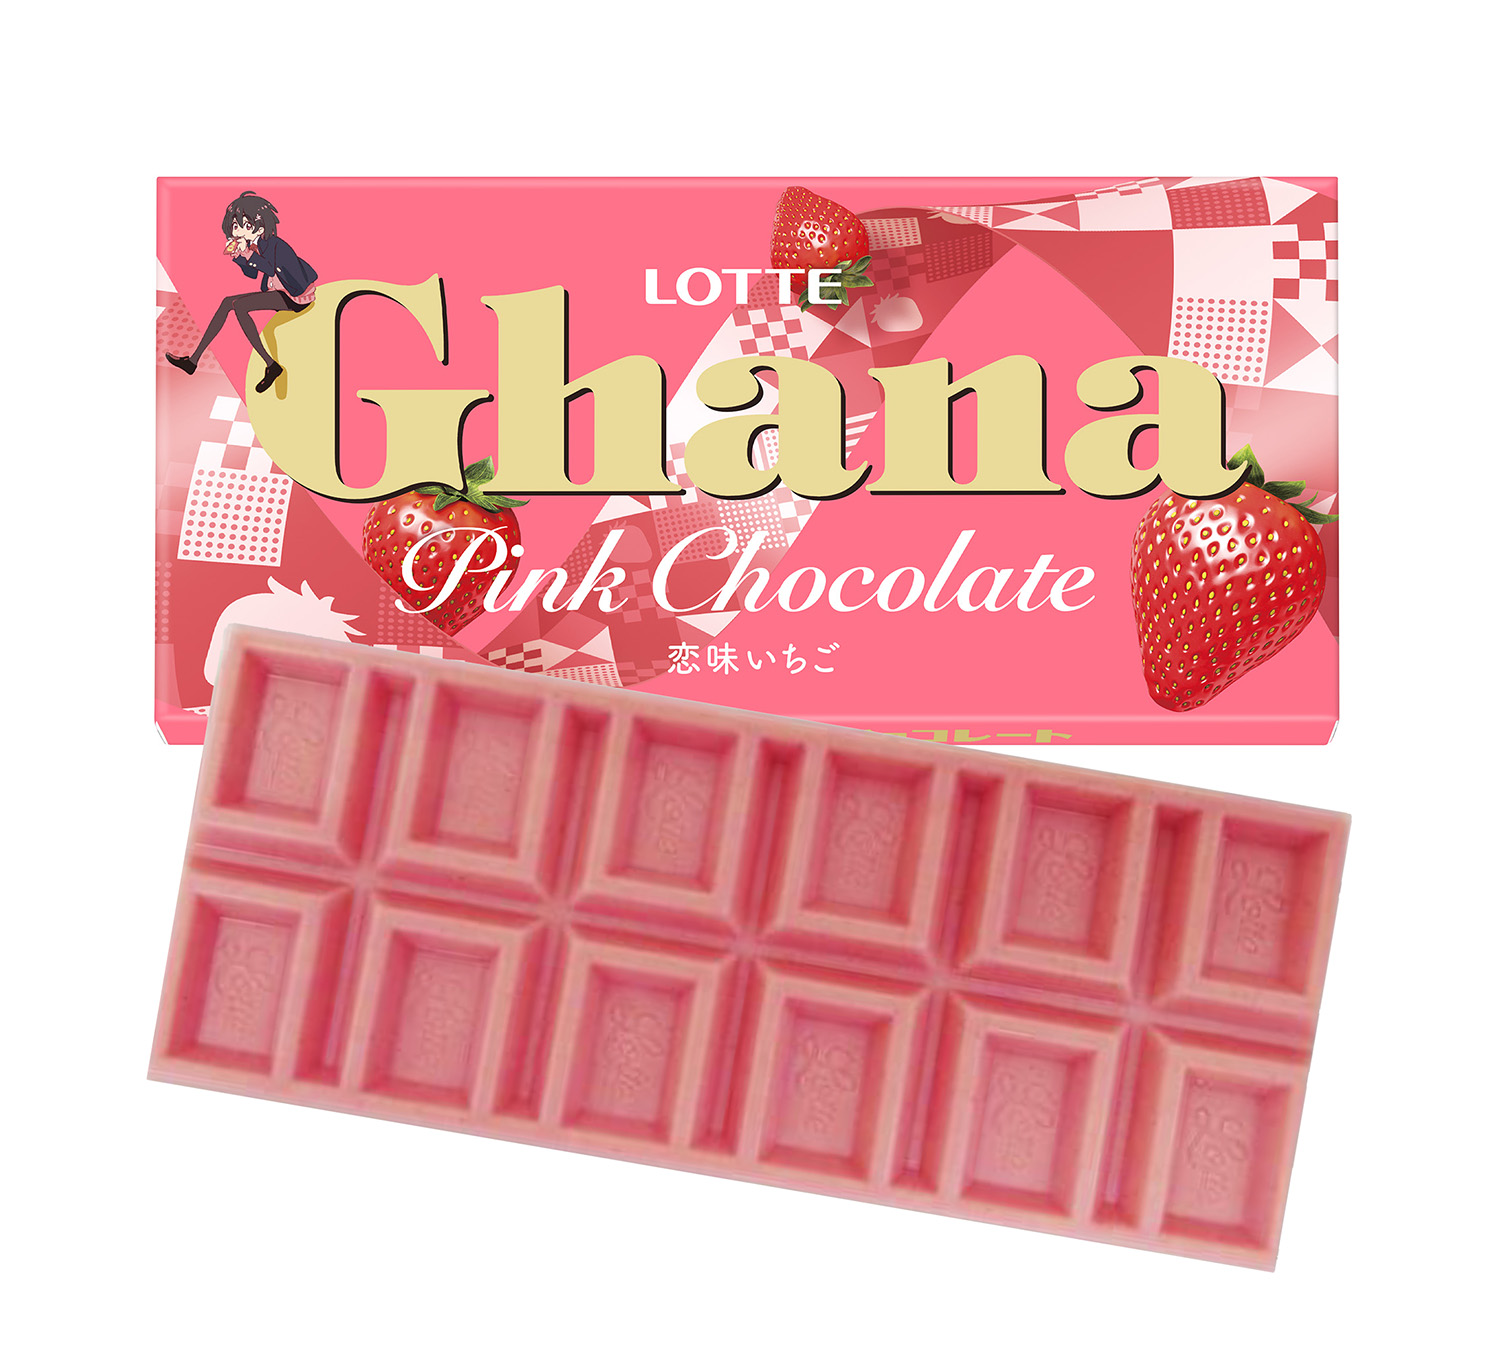 ガーナの板チョコ初のいちご味！「ガーナピンクチョコレート」新発売